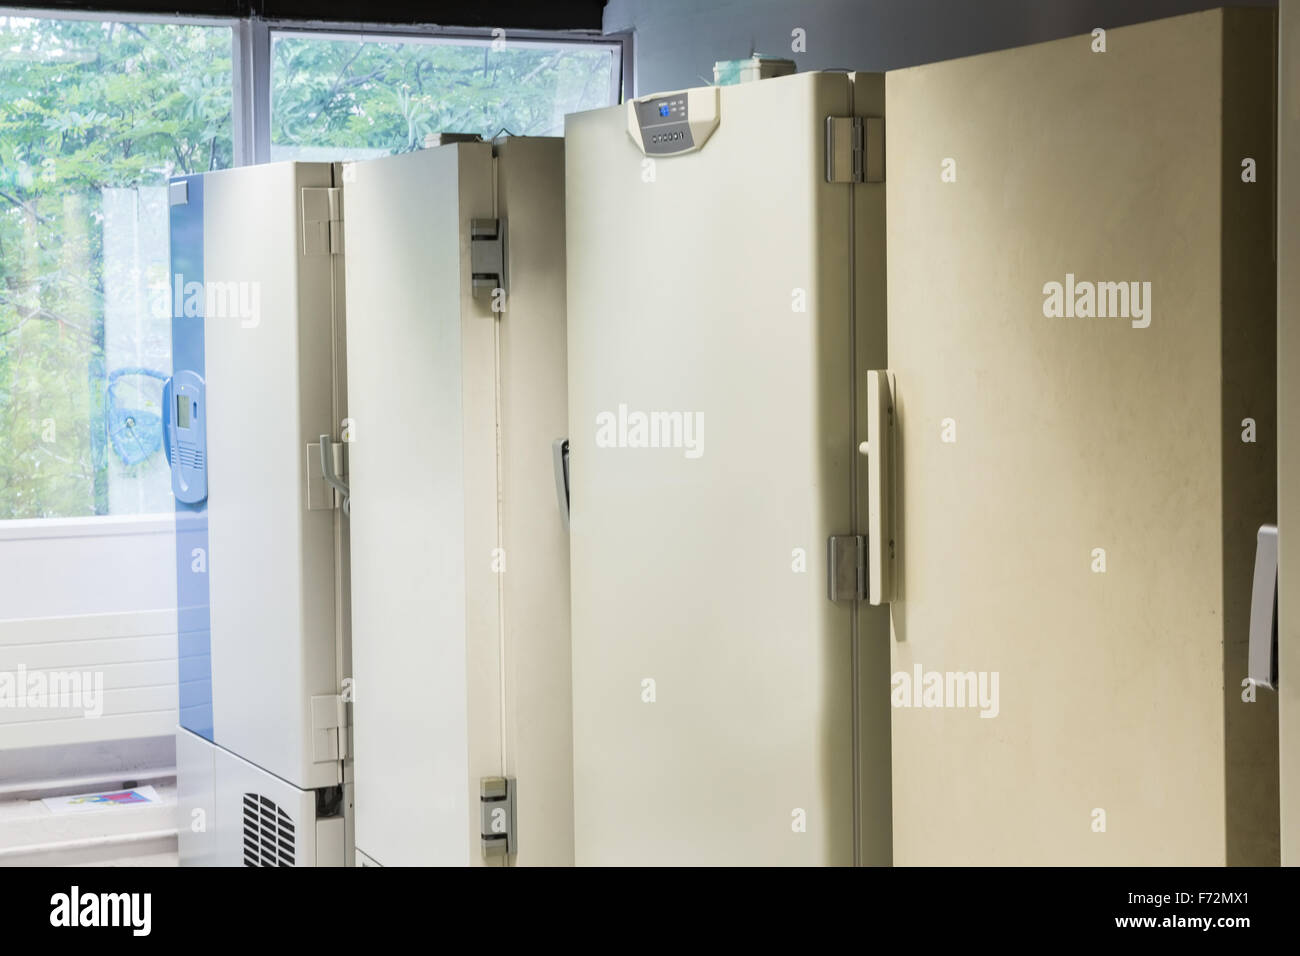 Large fridge units Stock Photo